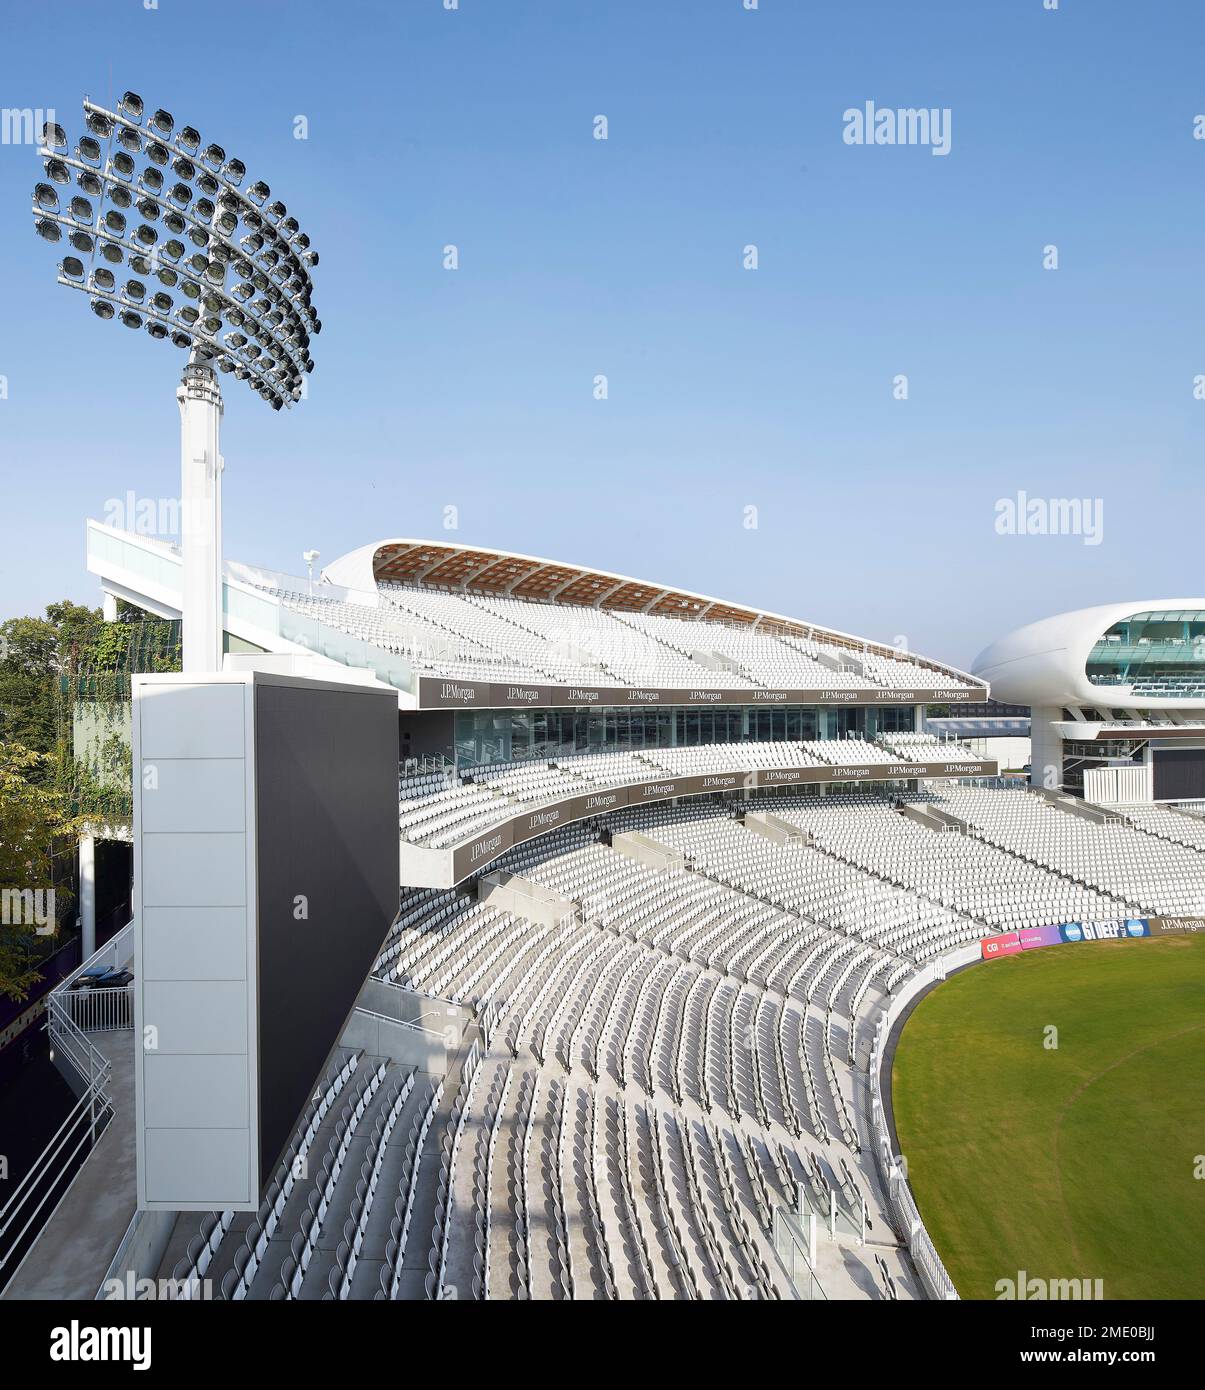 Vue en hauteur sur les sièges avec système de projecteurs. Lord's Cricket Ground, Londres, Royaume-Uni. Architecte : Wilkinson Eyre Architects, 2021. Banque D'Images